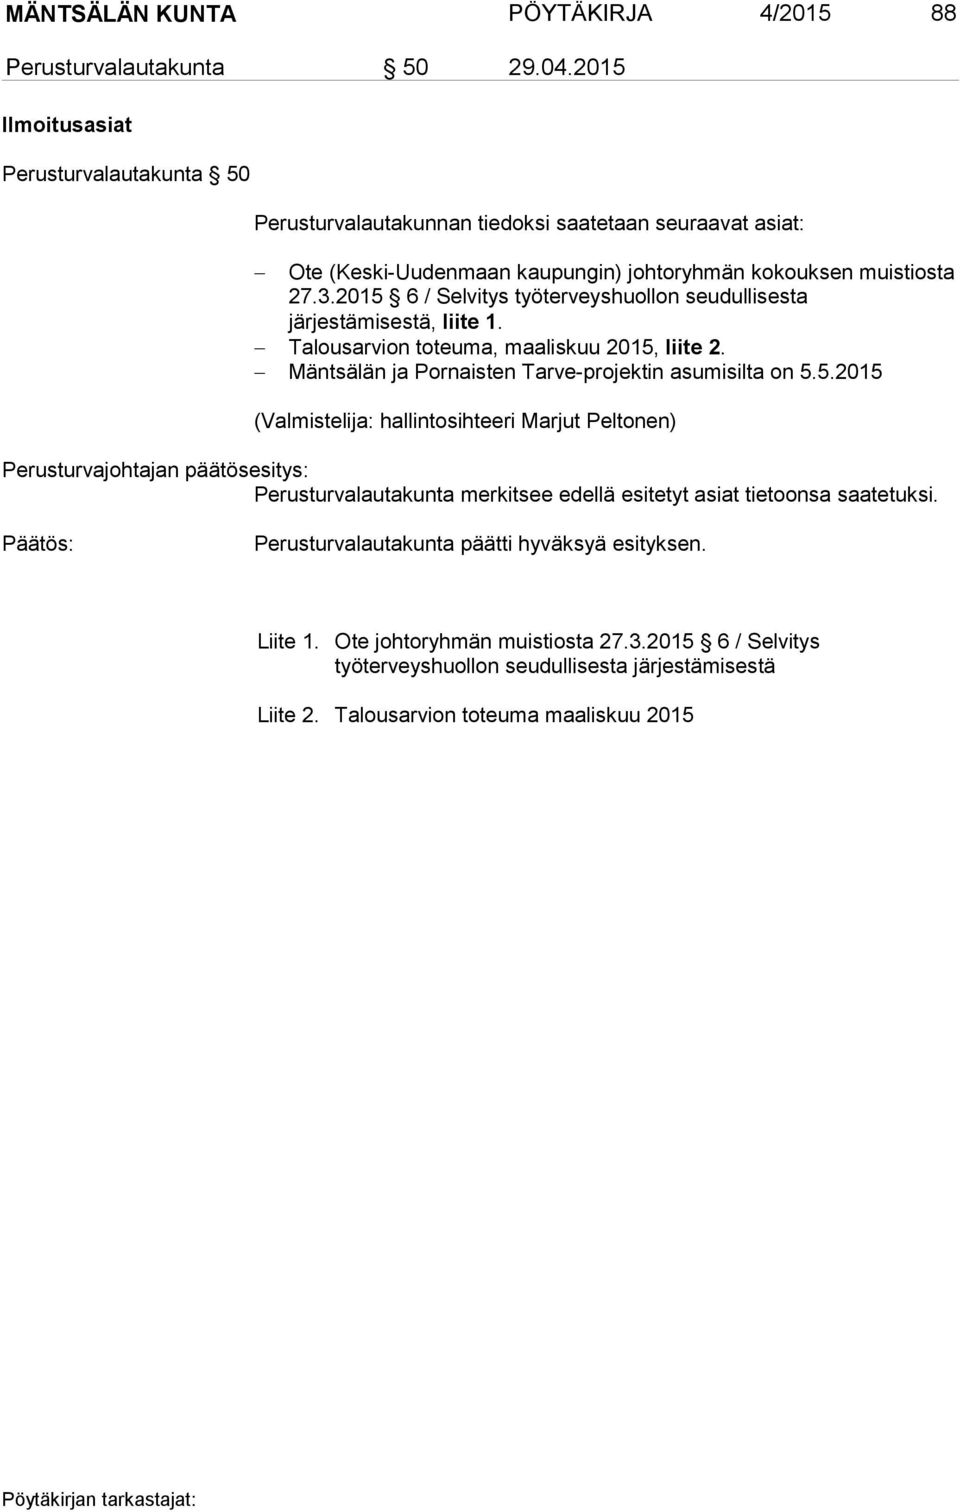 2015 6 / Selvitys työterveyshuollon seudullisesta järjestämisestä, liite 1. Talousarvion toteuma, maaliskuu 2015, liite 2. Mäntsälän ja Pornaisten Tarve-projektin asumisilta on 5.5.2015 (Valmistelija: hallintosihteeri Marjut Peltonen) Perusturvajohtajan päätösesitys: Perusturvalautakunta merkitsee edellä esitetyt asiat tietoonsa saatetuksi.